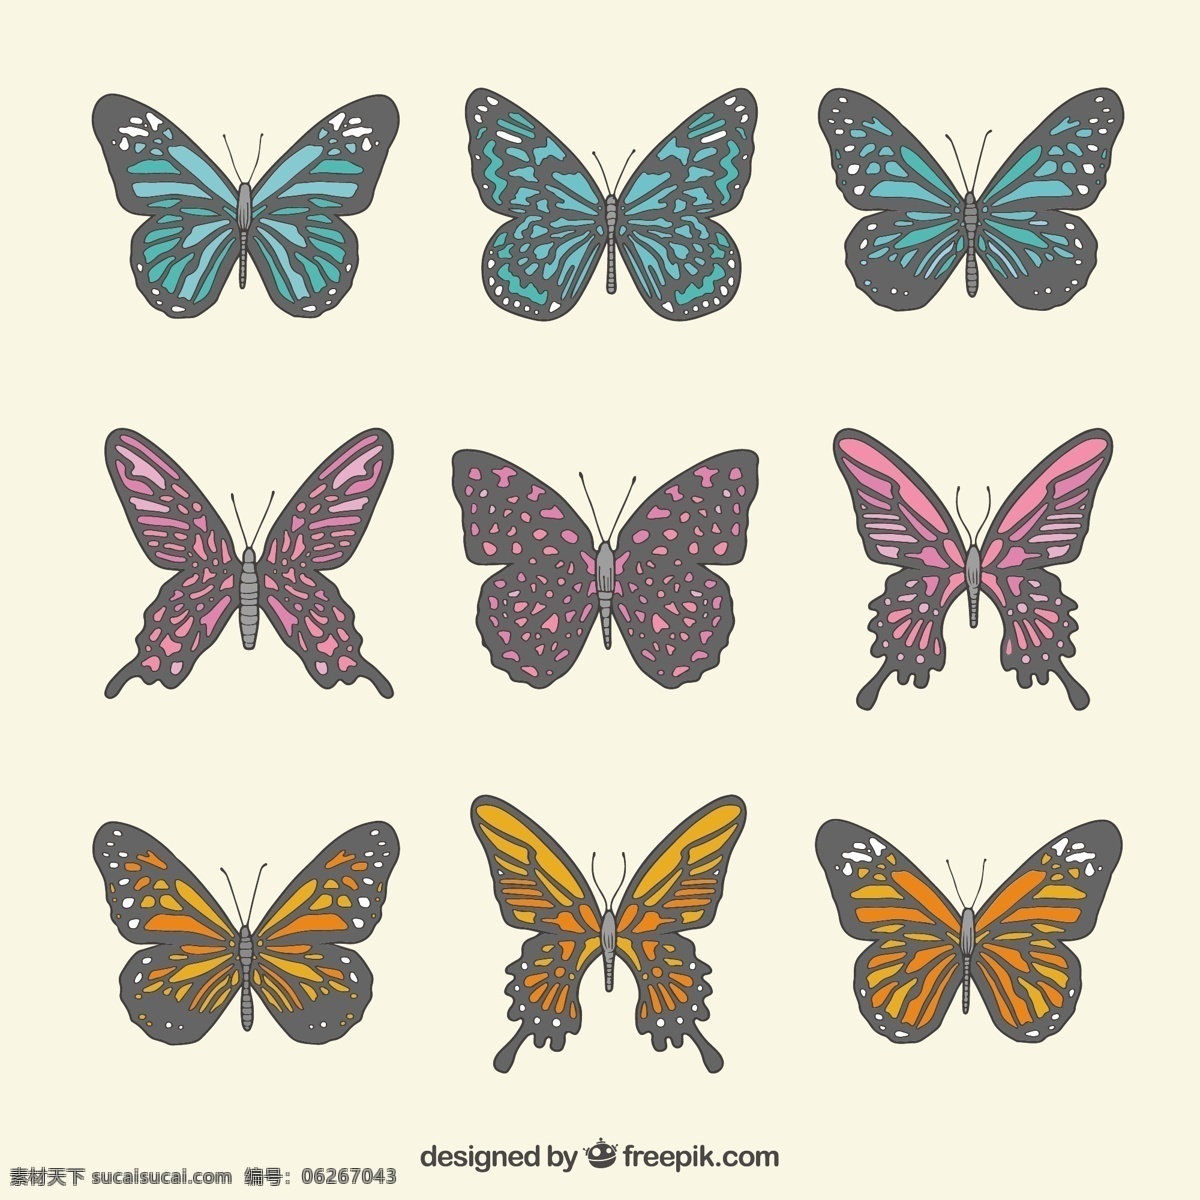 带 灰 厚度 蝴蝶 一方面 自然 动物 手绘 可爱 绘画 飞灰 包 可爱的动物 昆虫 飞行 绘制草图 草图 白色